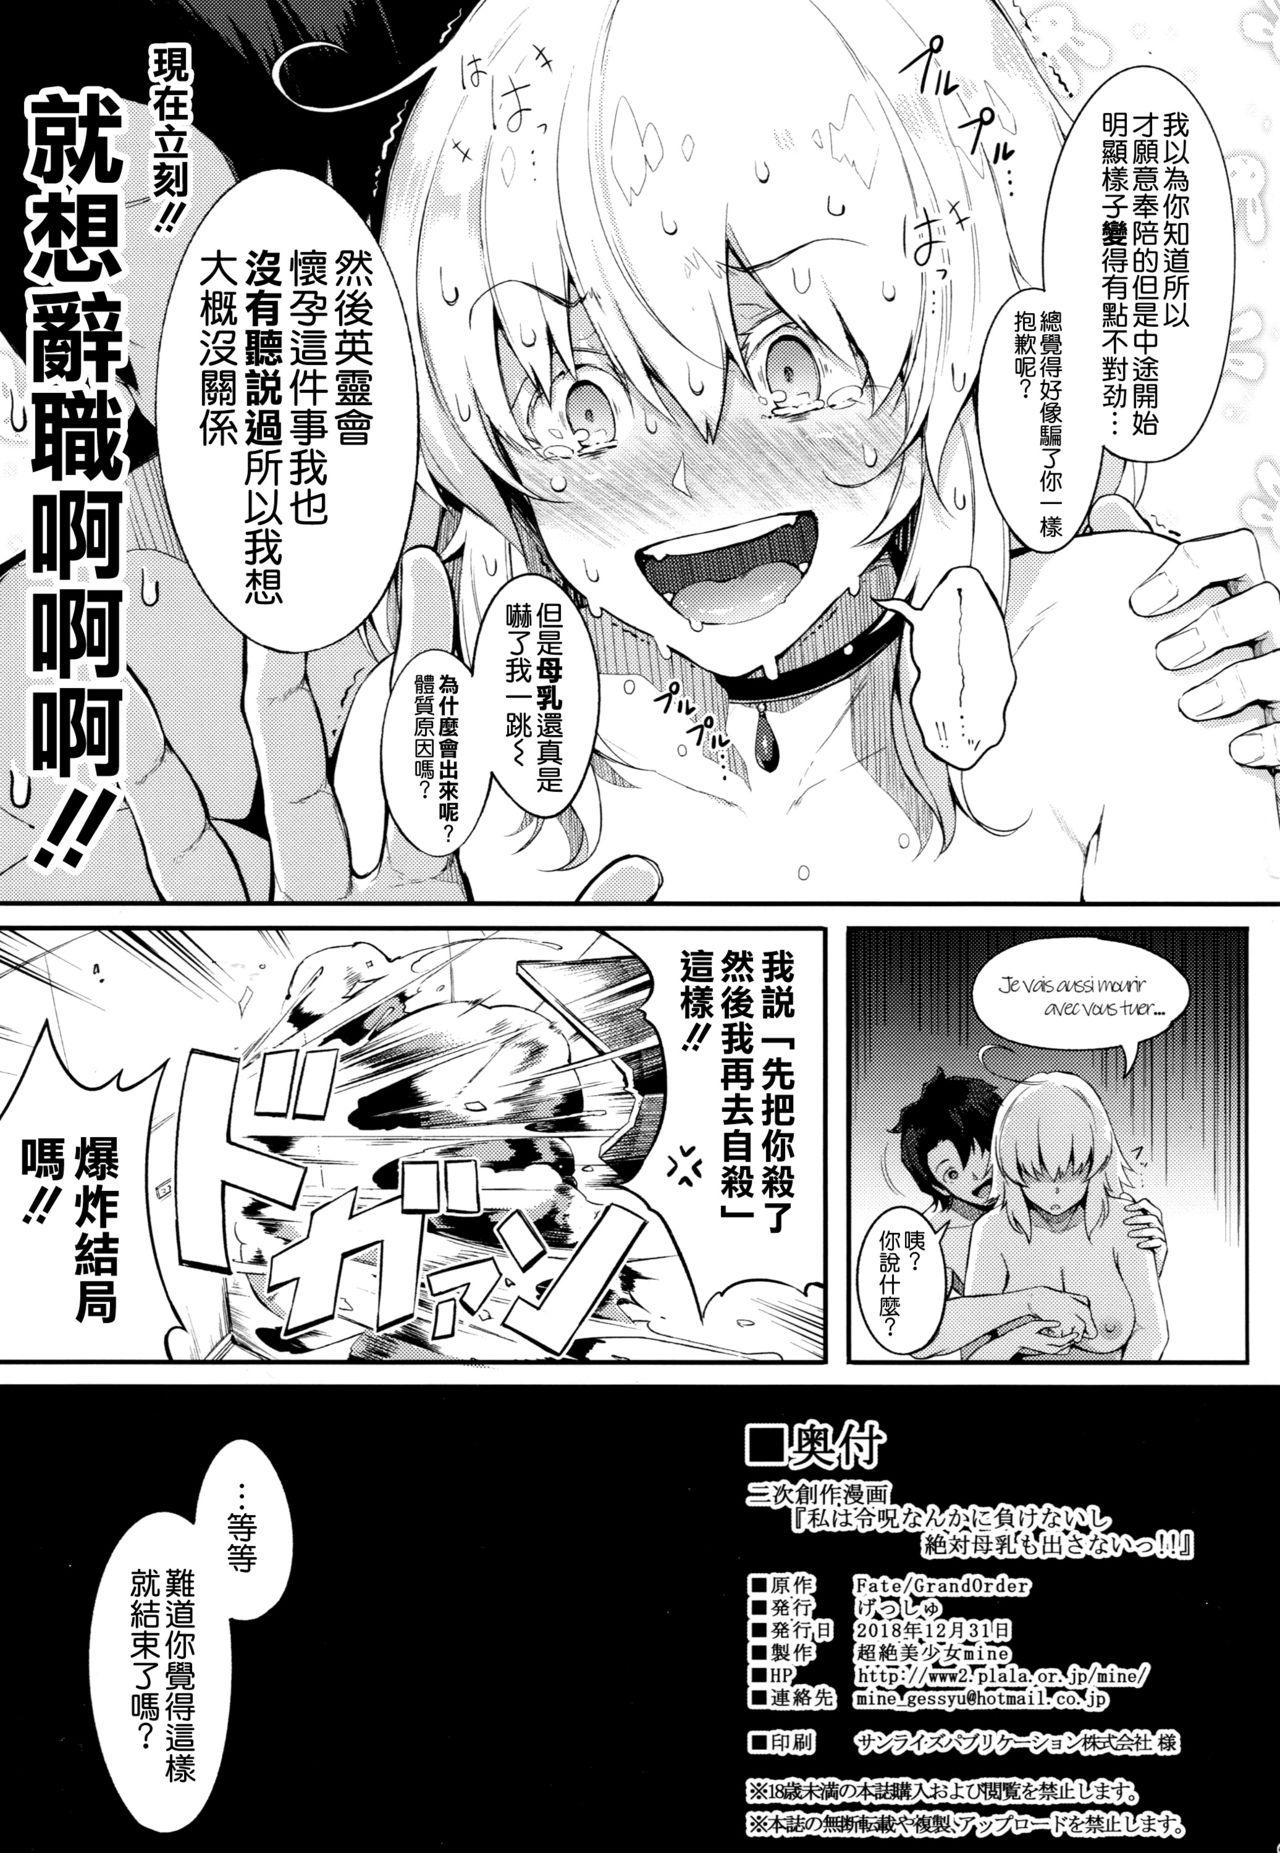 Sex Toy Watashi wa Reiju nanka ni Makenaishi Zettai Bonyuu mo Dasanai!! - Fate grand order Free Amatuer - Page 25